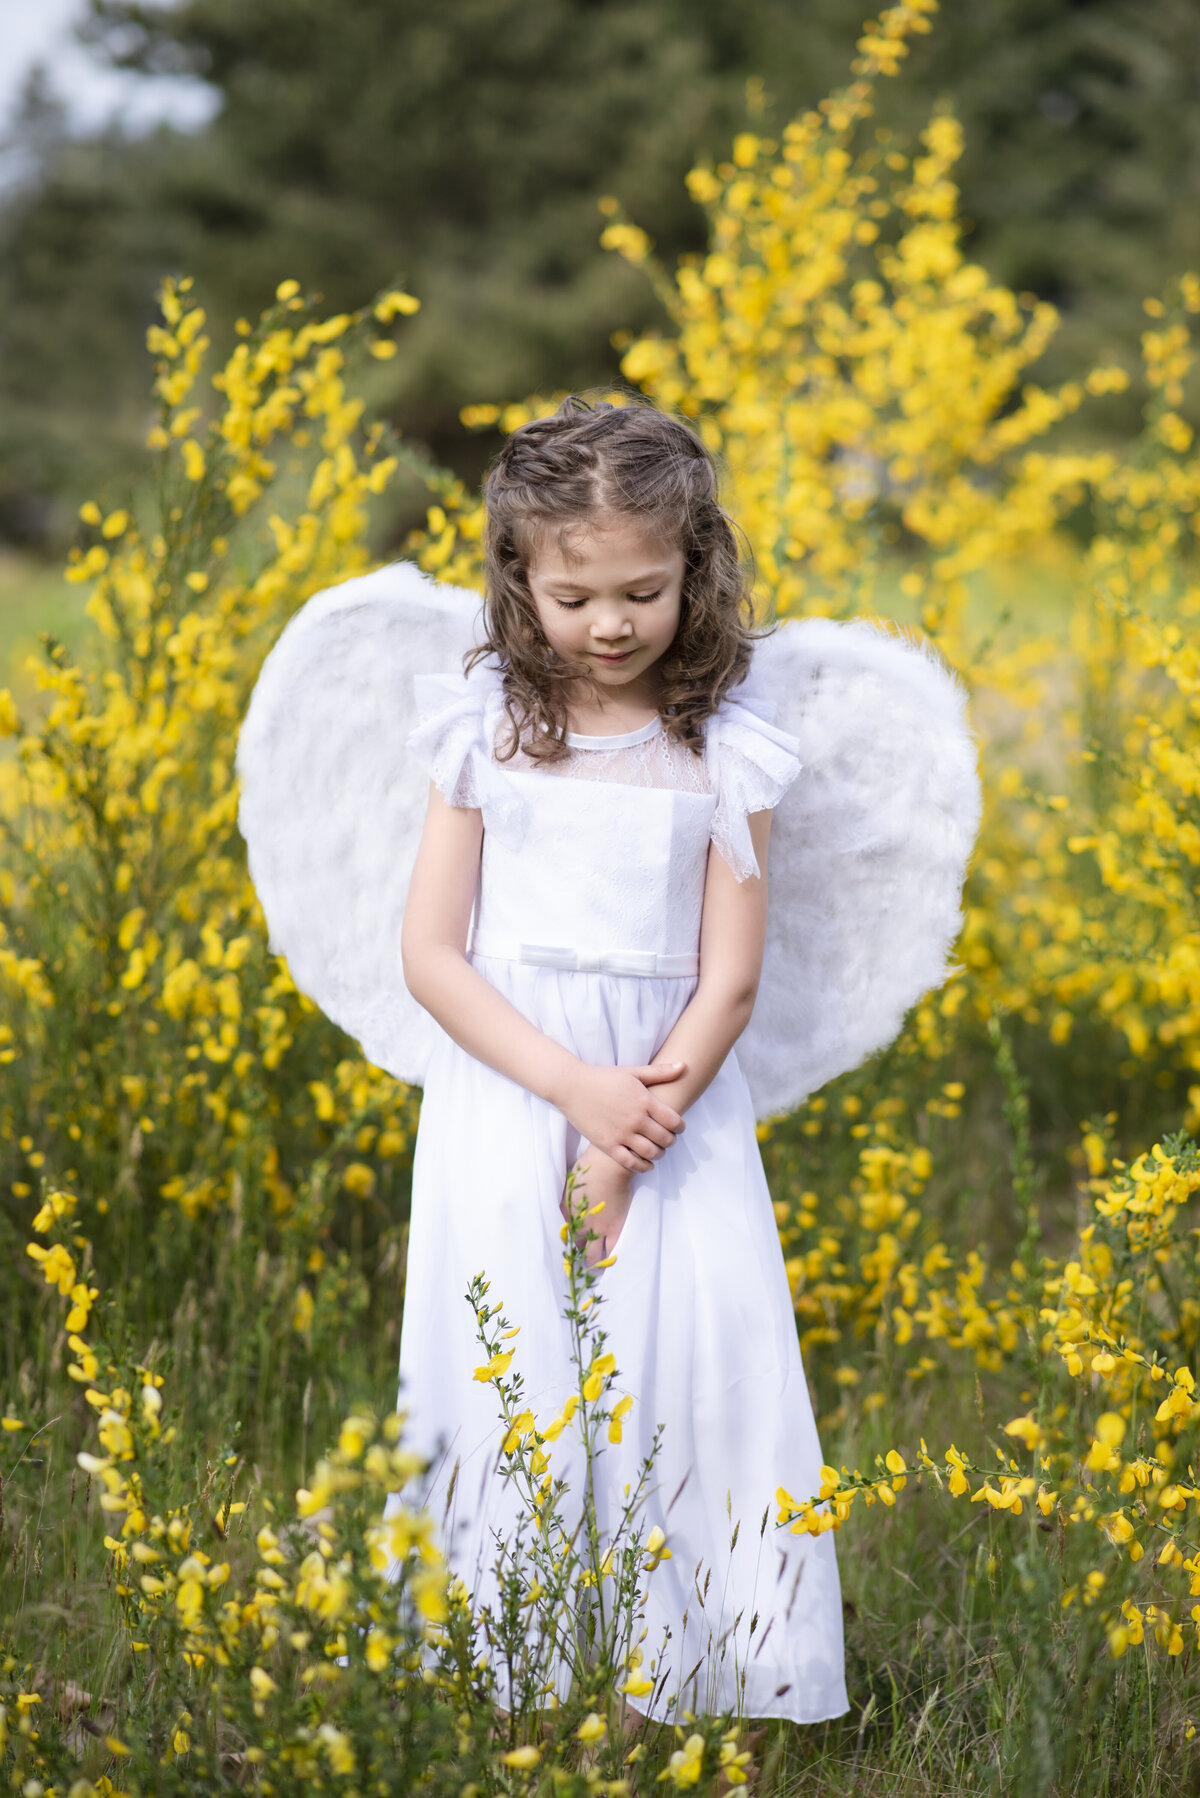 Angel in field of yellow flowers